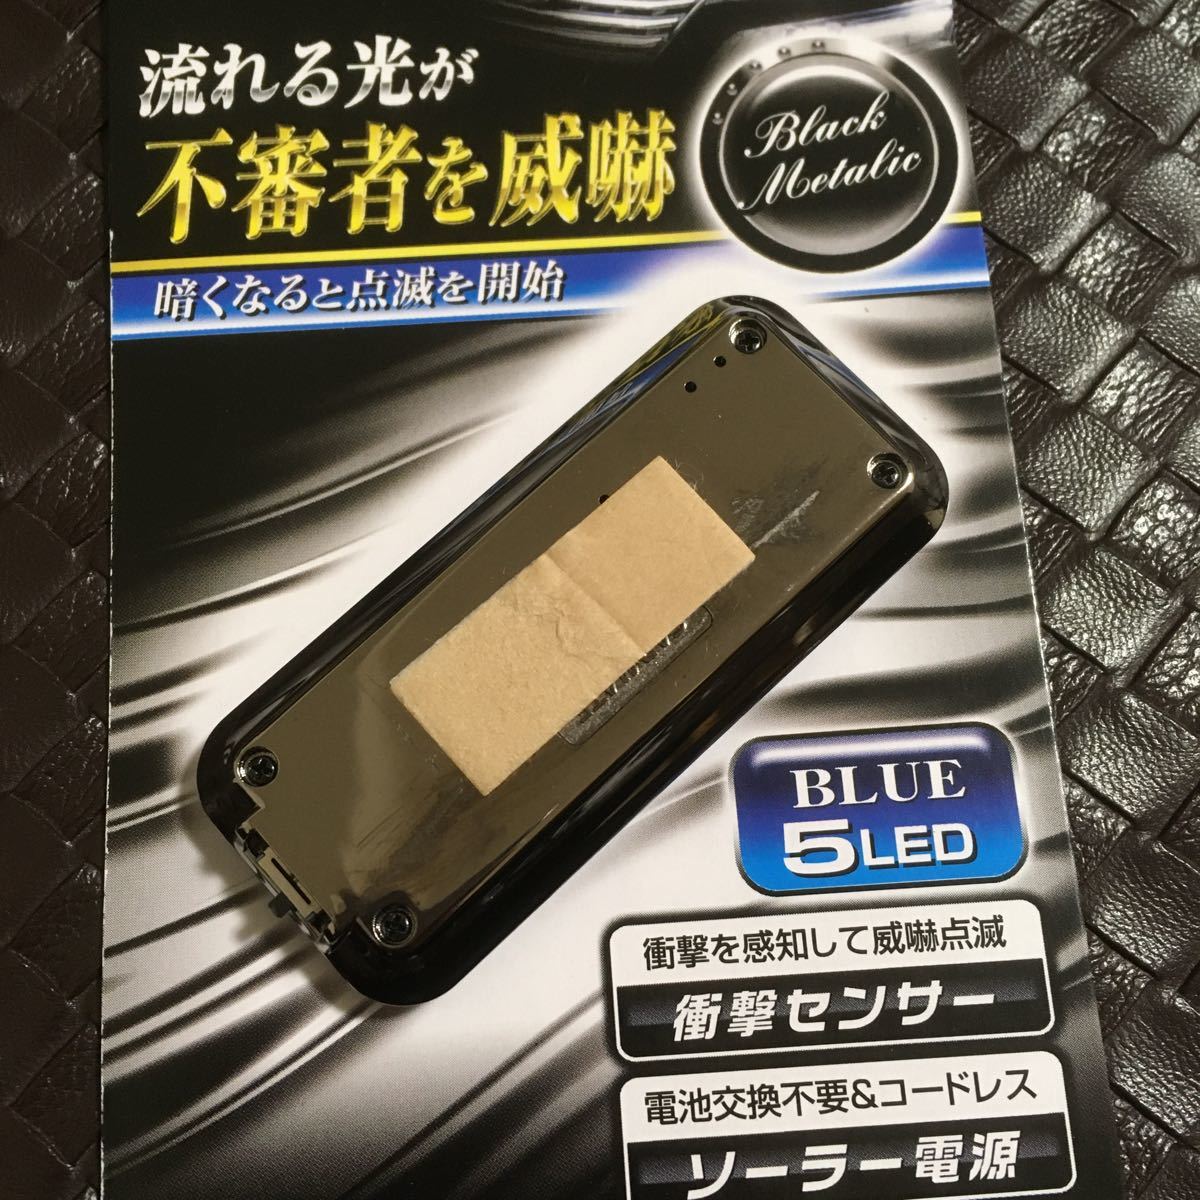  стоимость доставки 230 иен Carmate Night сигнал декоративный элемент BKM/BL SQ83 система безопасности противоугонное оборудование муляж голубой LED солнечный источник питания б/у с дополнением 